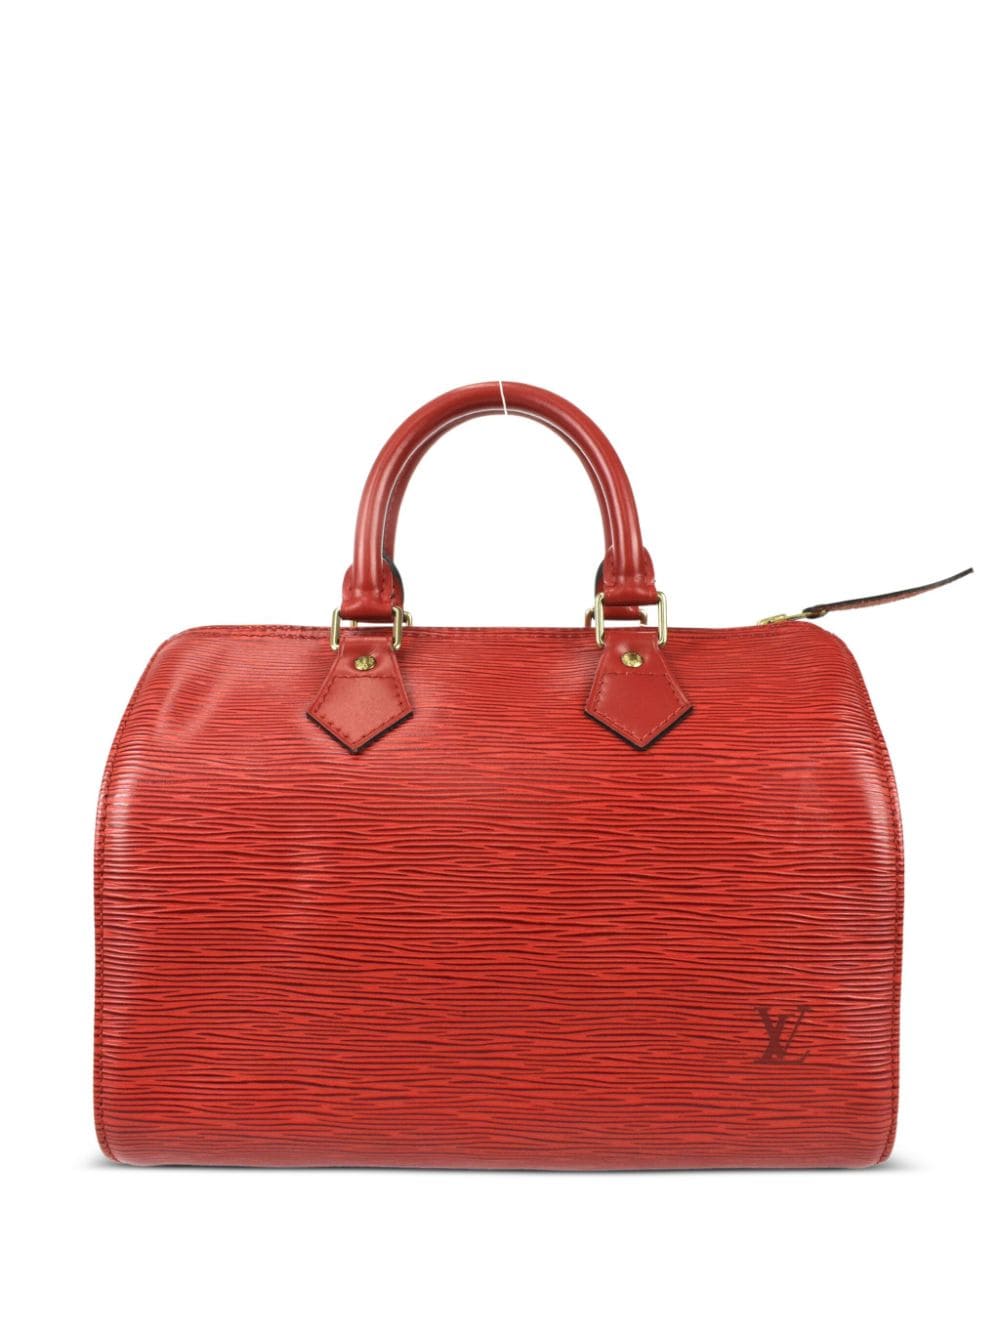 Louis Vuitton Speedy 25 Handbag in Red Epi Leather